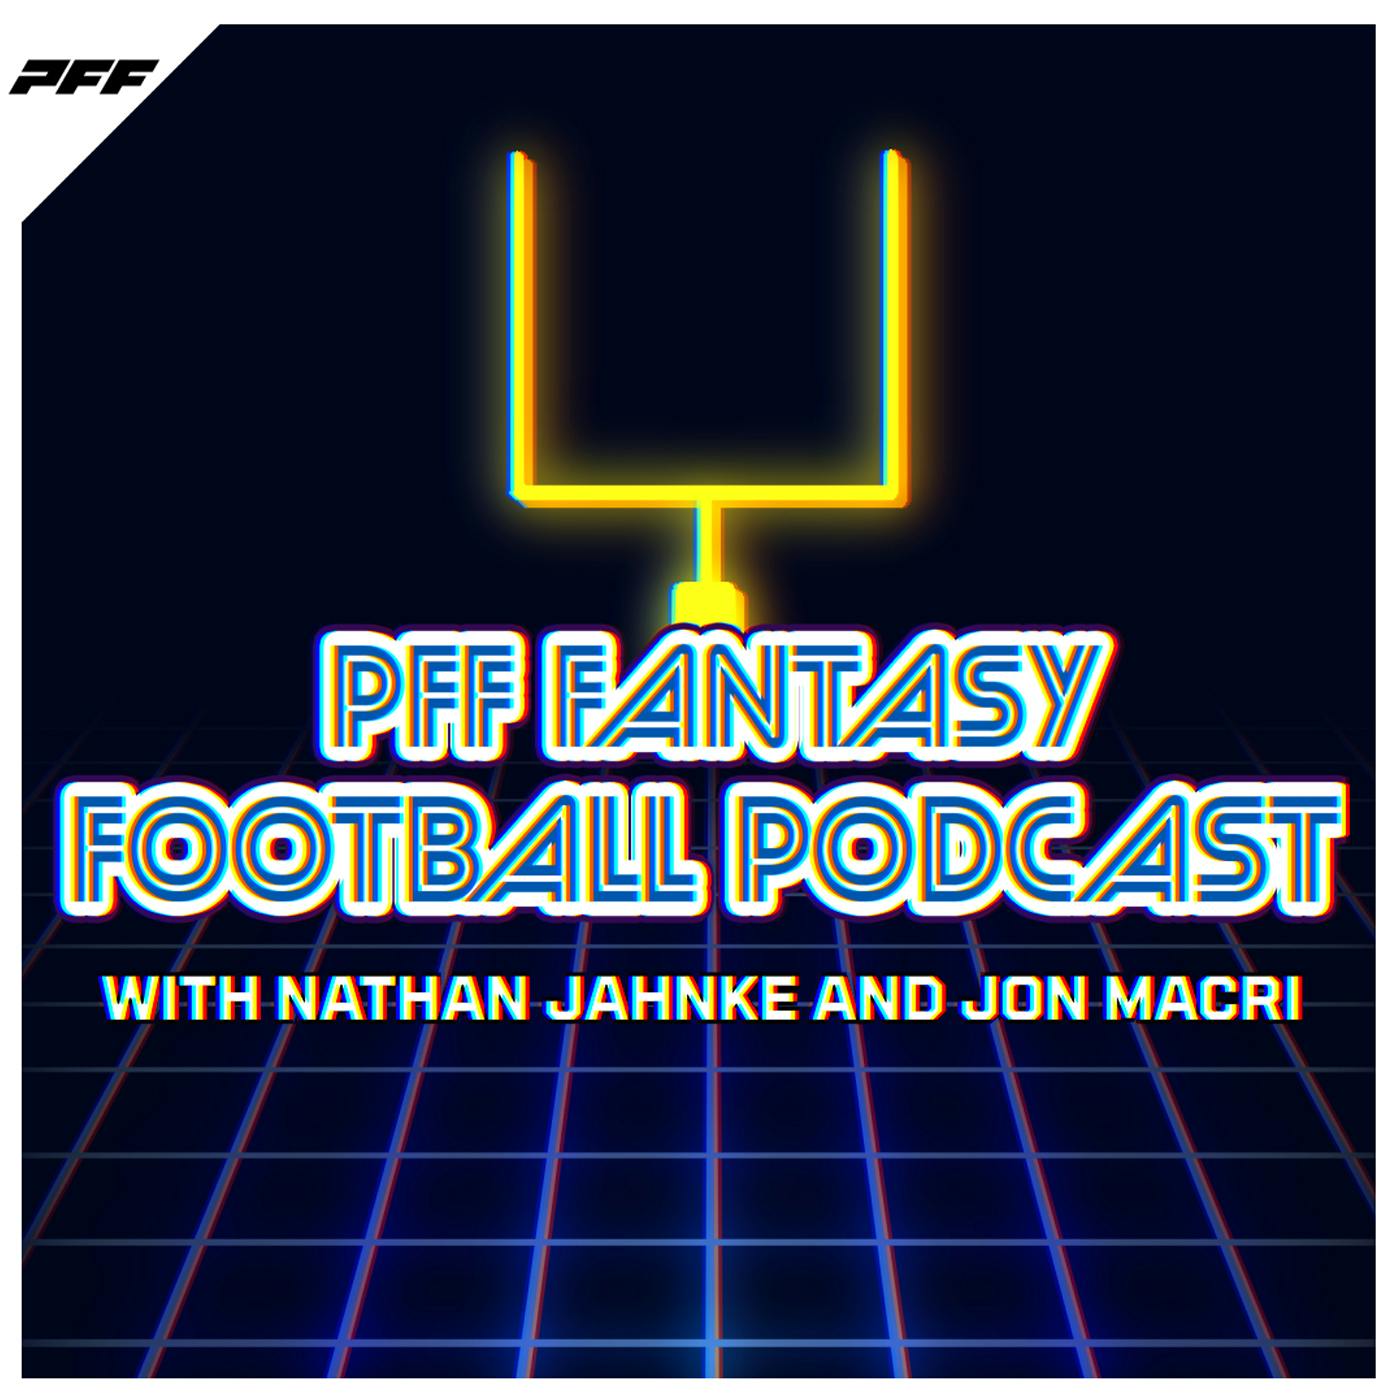 PFF Fantasy Football Podcast